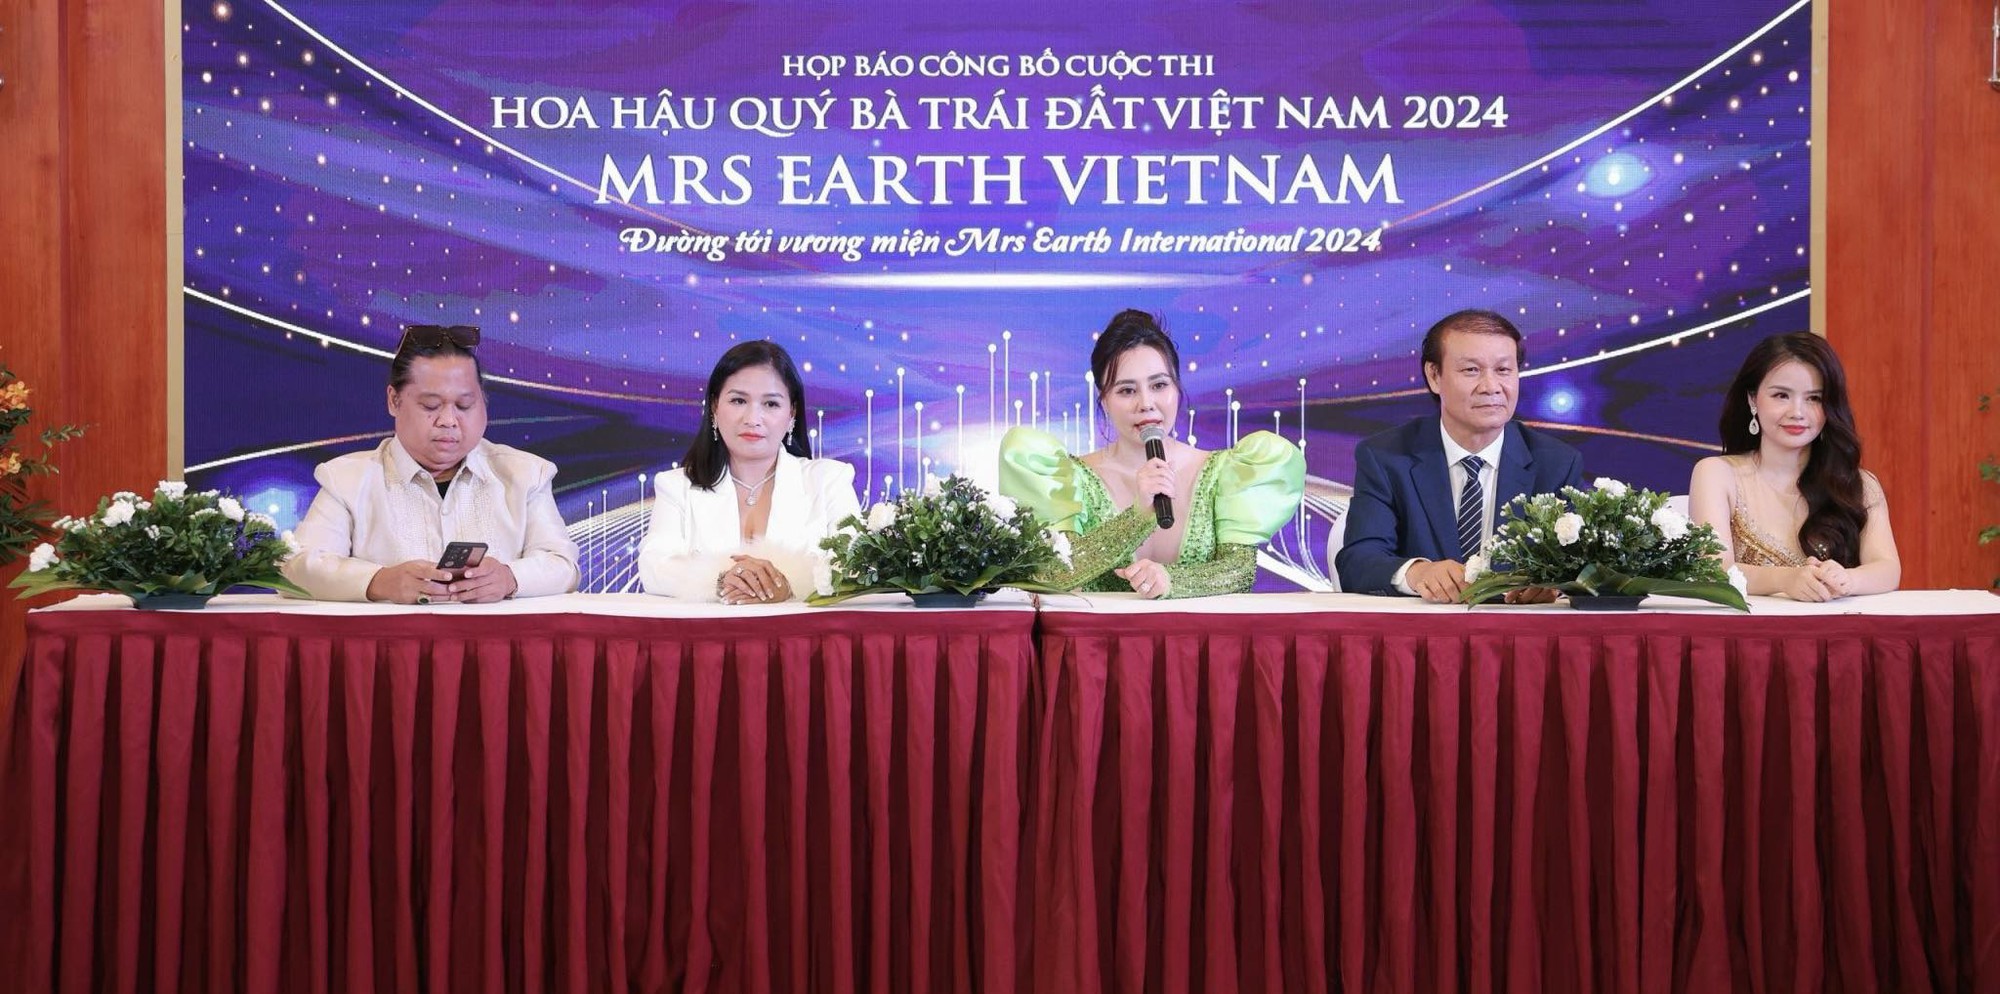 Phan Kim Oanh: Tổ chức thi hoa hậu mà ai cũng than lỗ thì còn ai dám làm - Ảnh 1.